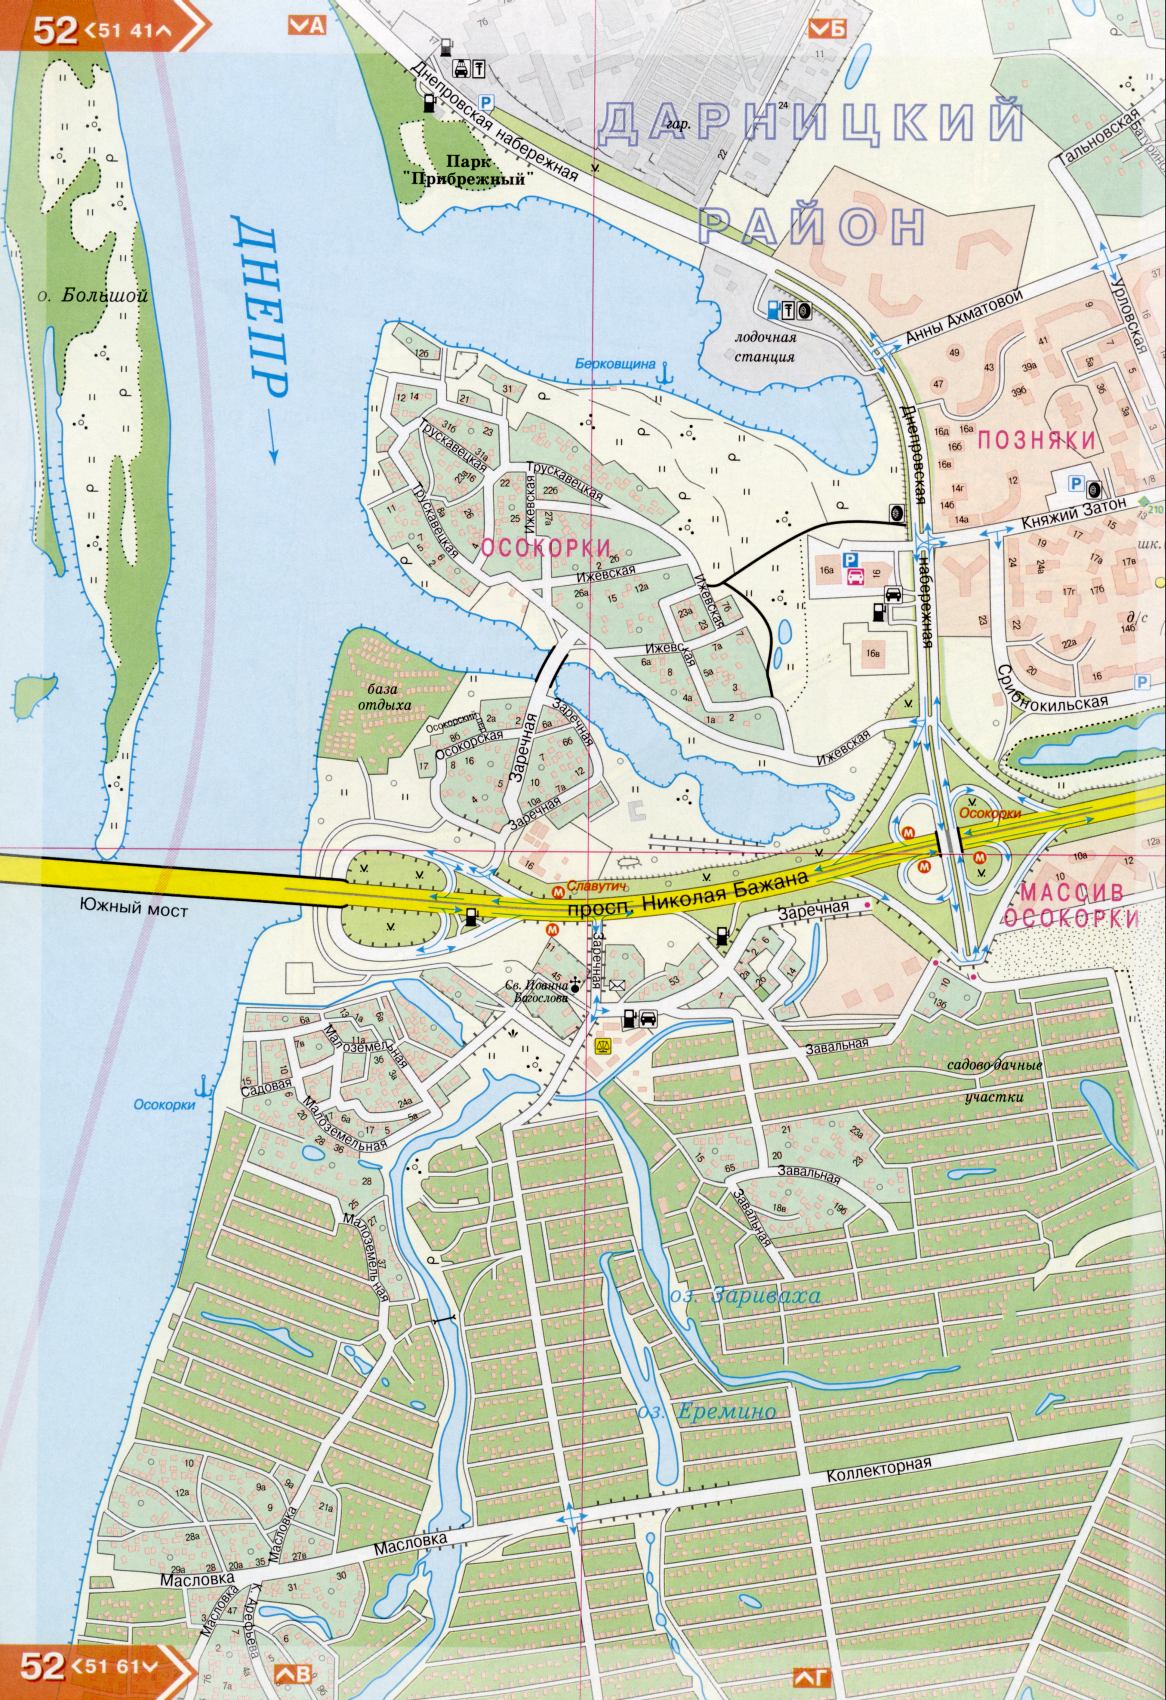 Kiev carte détails 1cm = 150m pour 45 feuilles. Carte de Kiev de l'atlas des routes. Télécharger une carte détaillée, H4